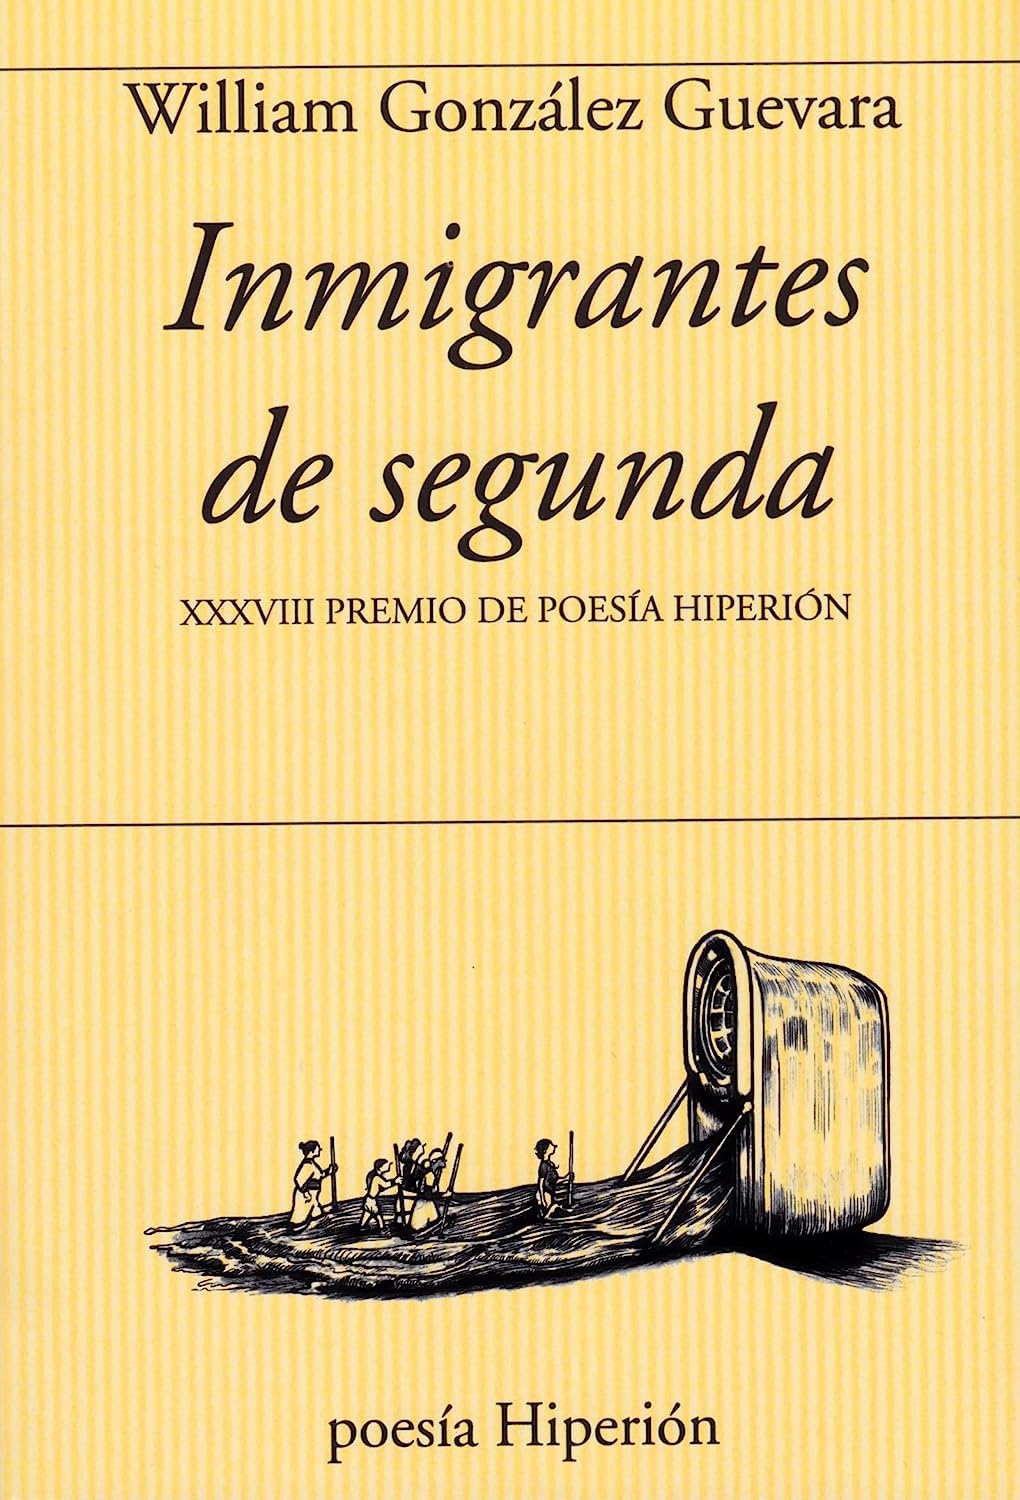 4 poemas de Inmigrantes de segunda, de William González Guevara